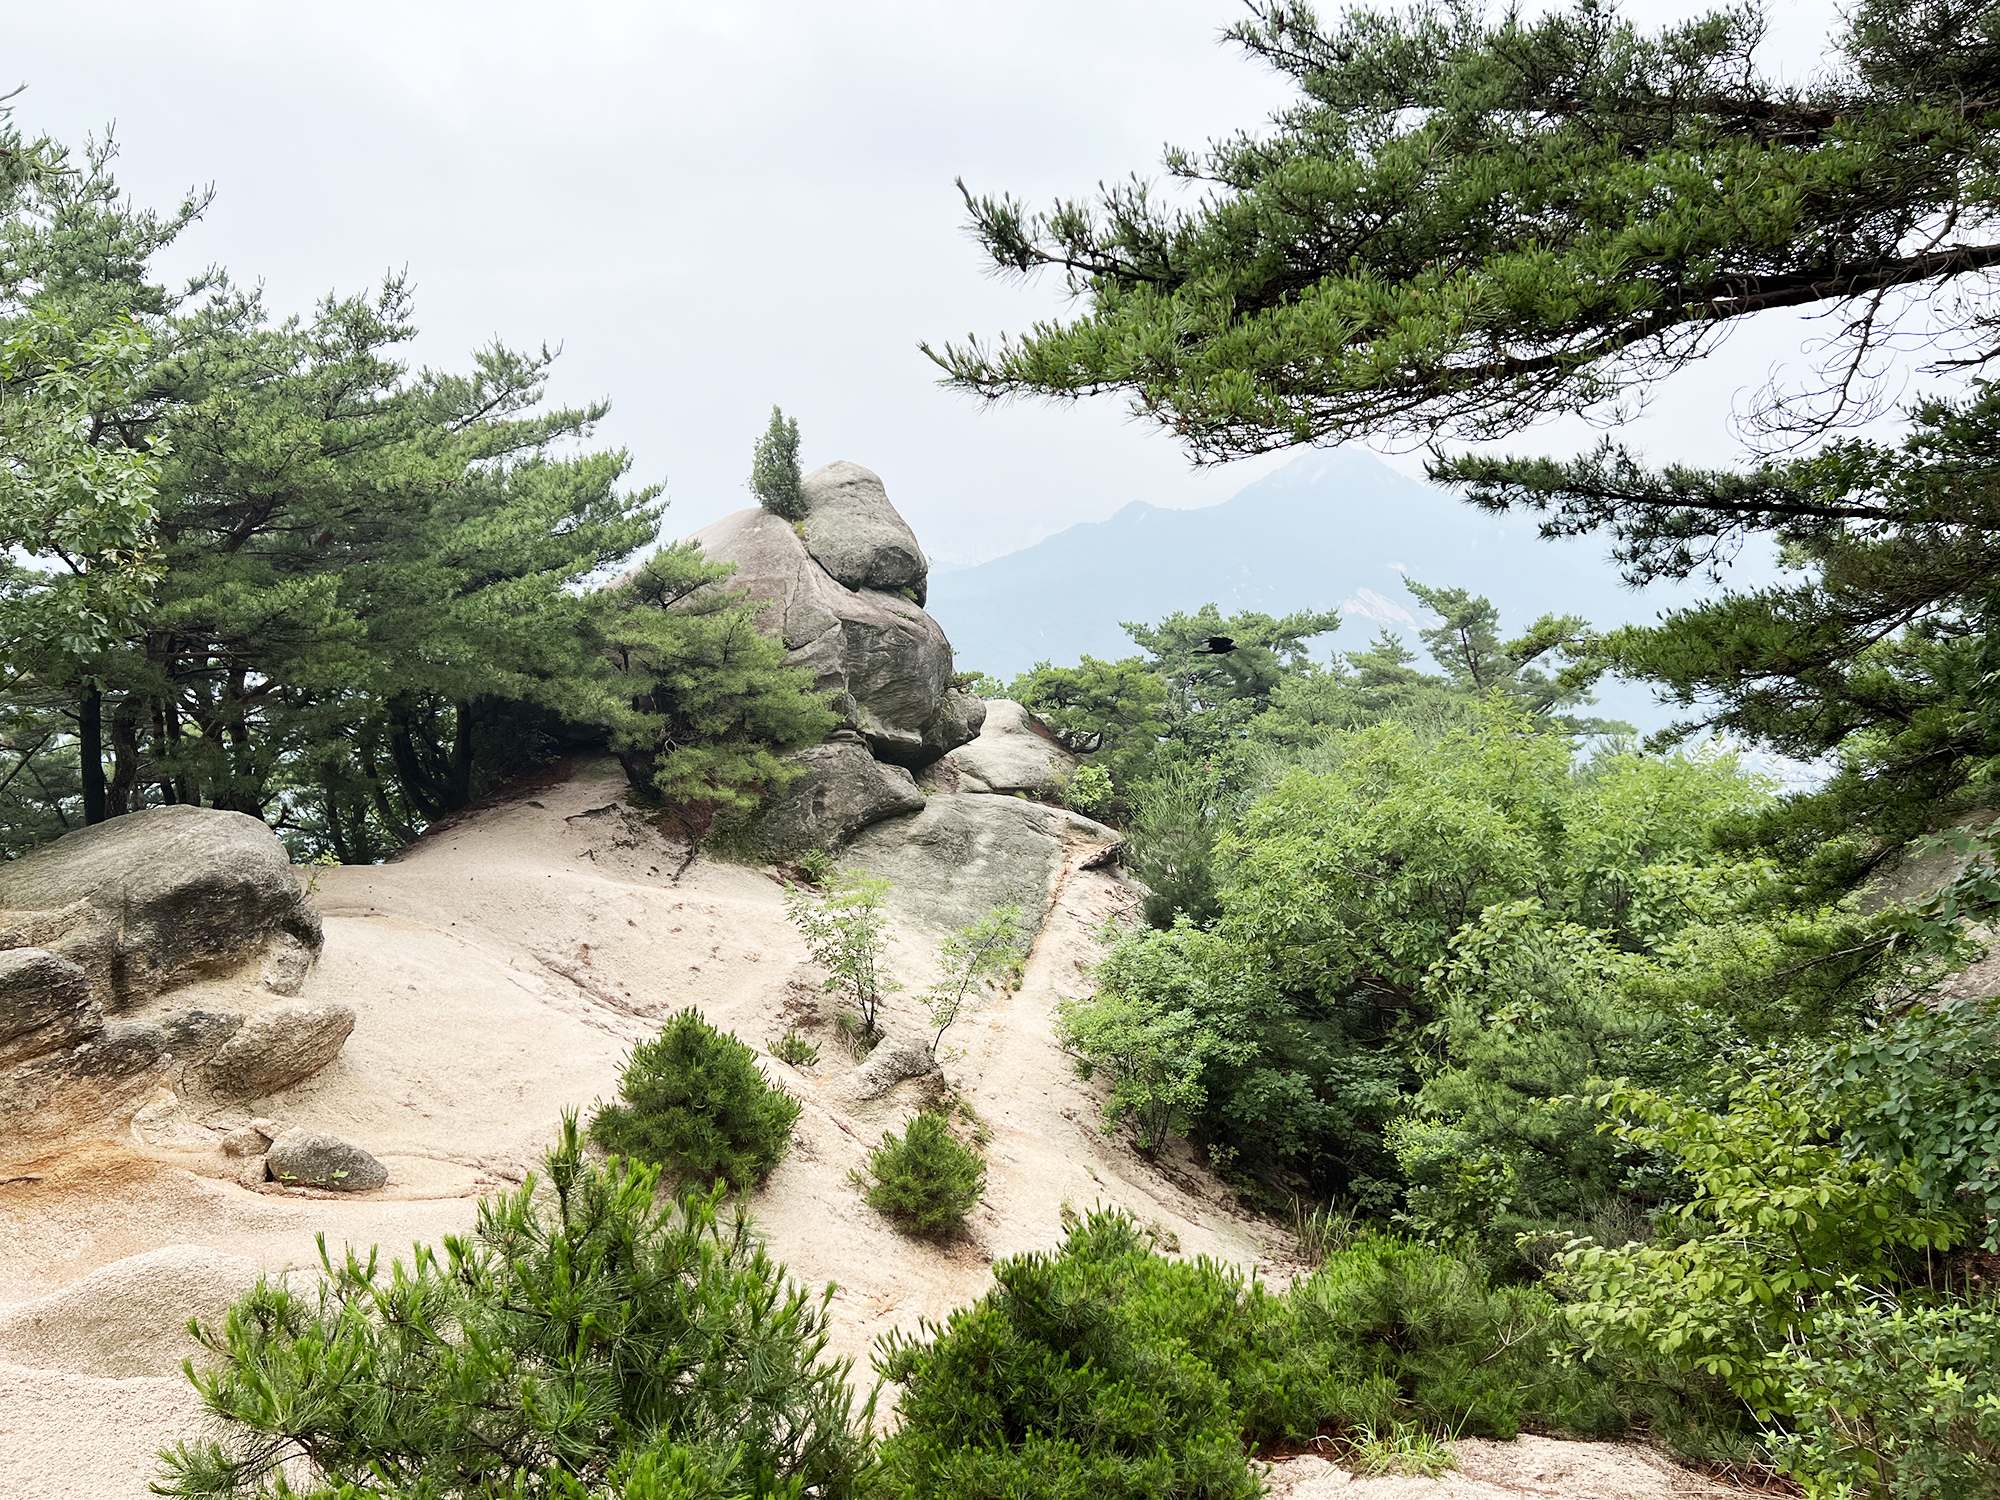 Seoul: Suraksan - På bjergvandring i Sydkorea